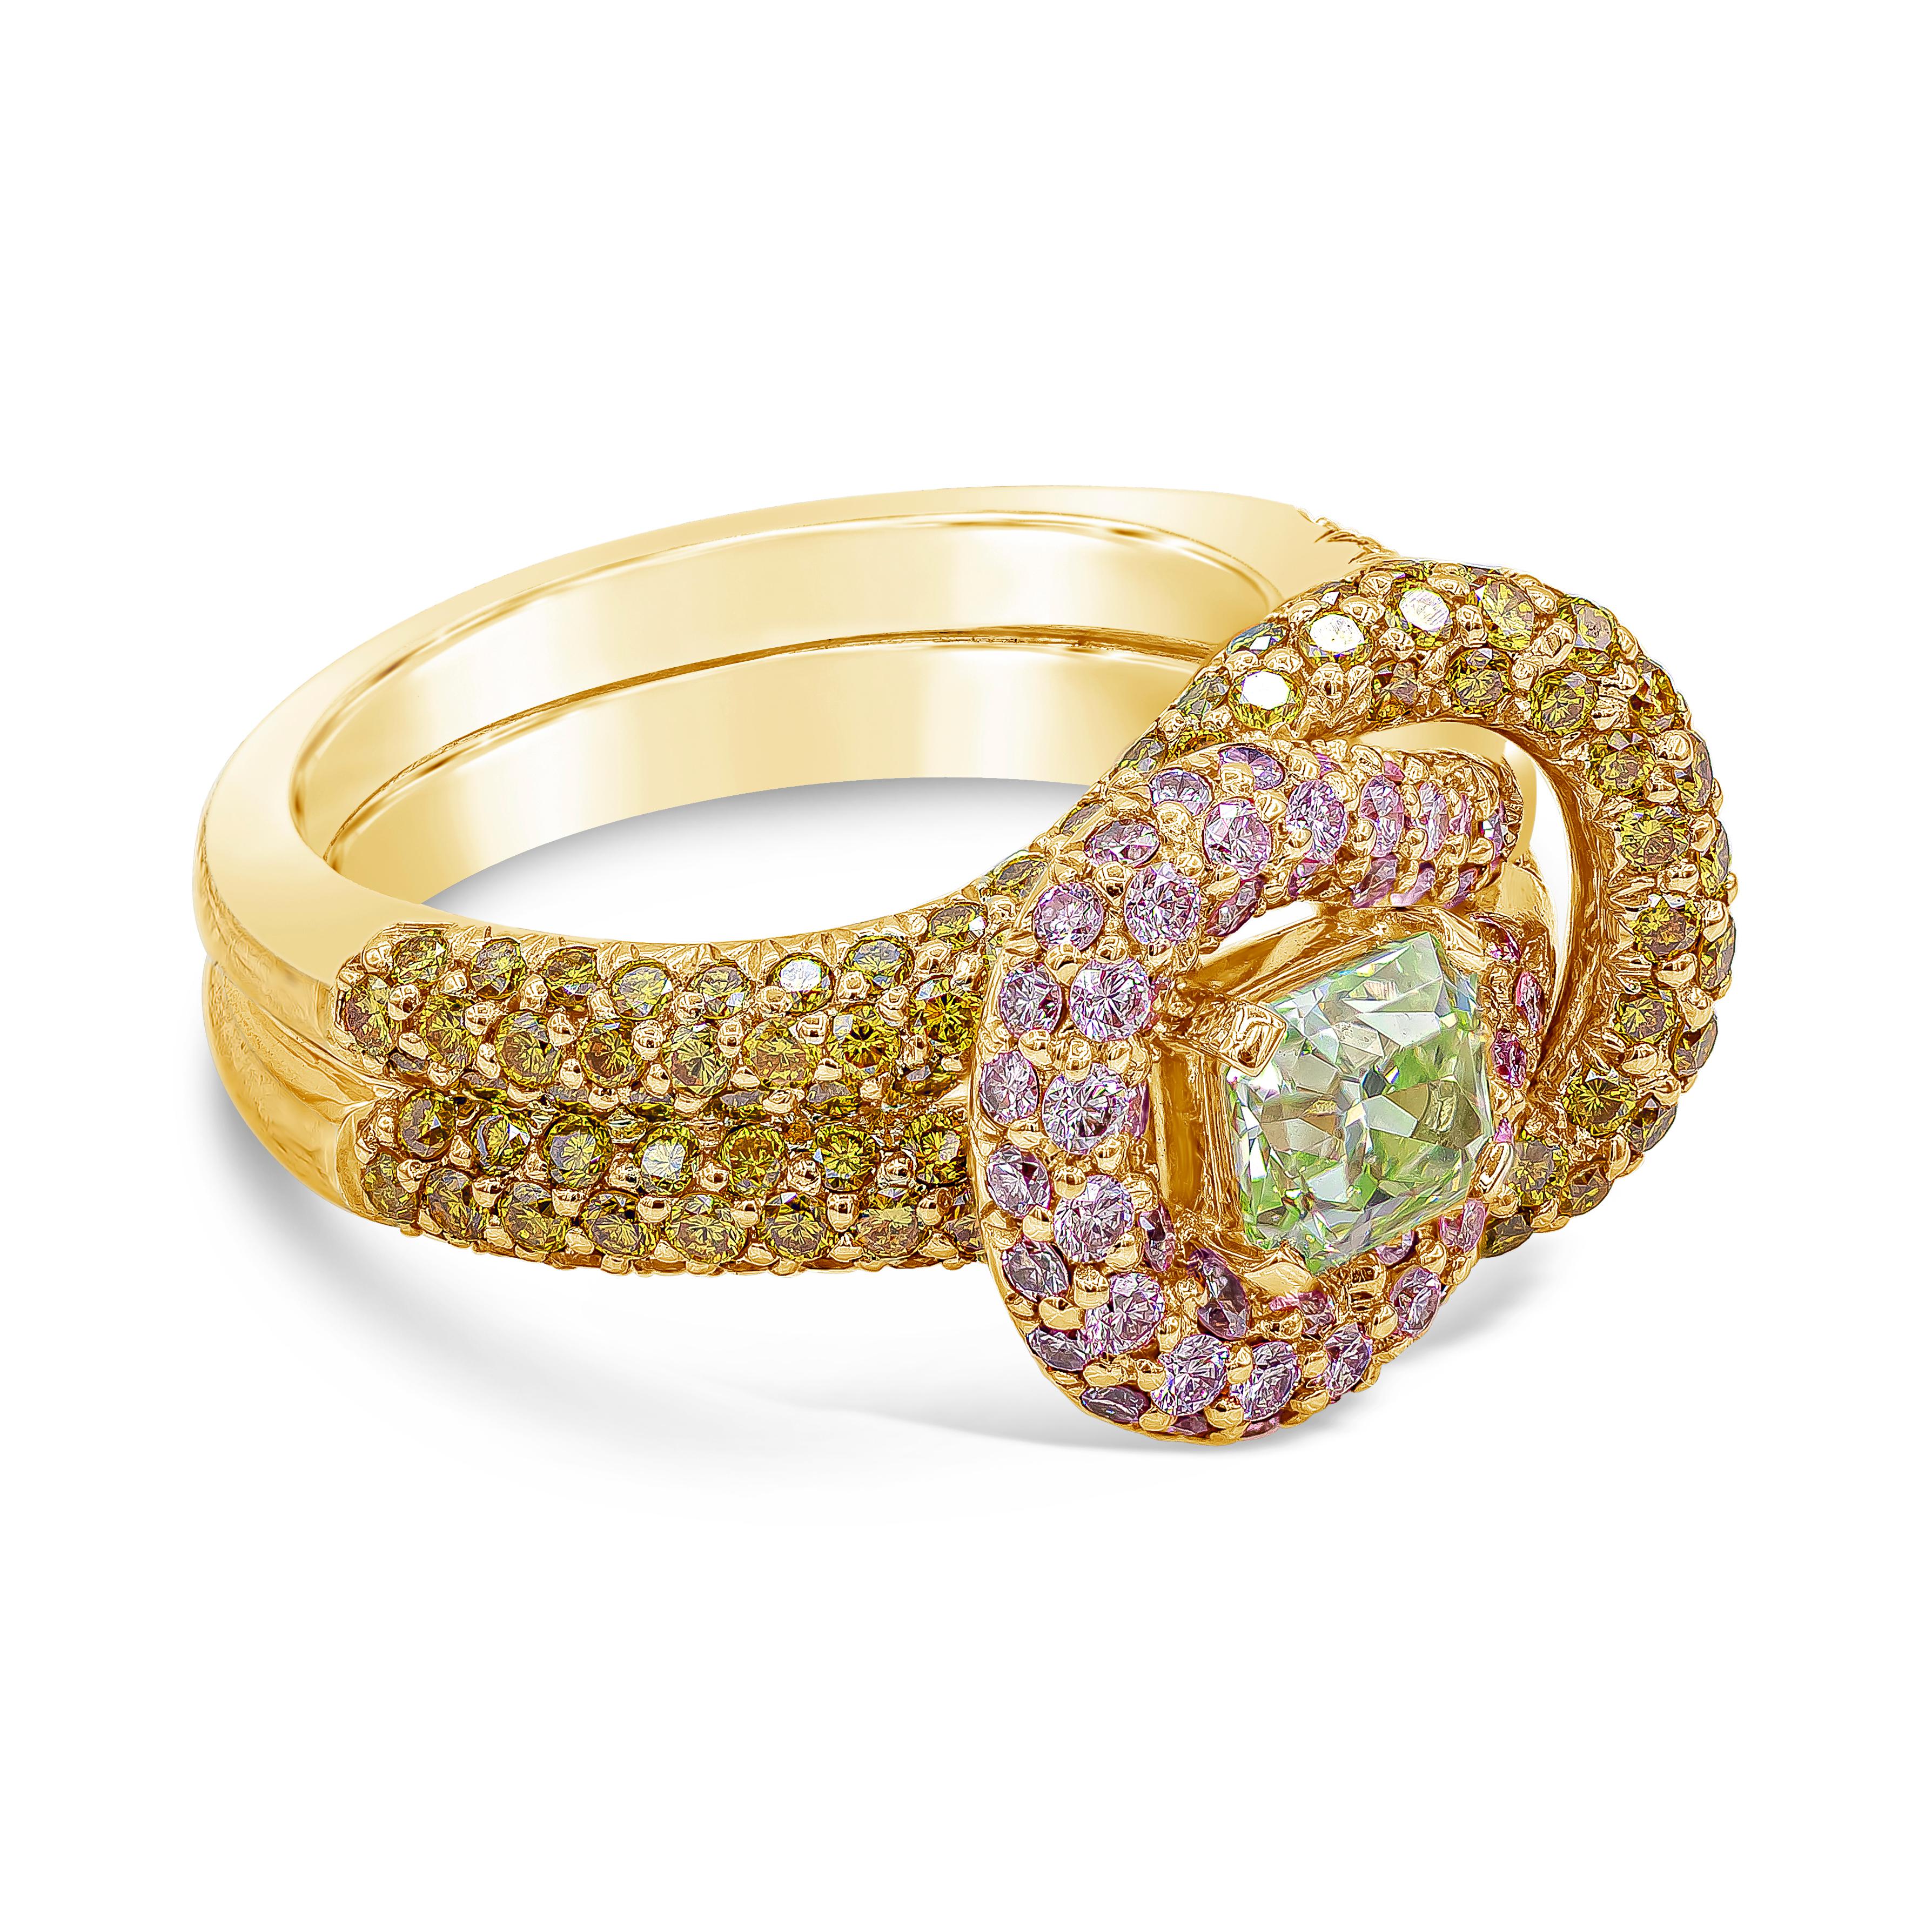 Un magnifique diamant certifié GIA de 0,70 carat de couleur vert intense, VS1, serti dans un coffret en or rose 18 carats. Design/One en forme de nœud et entouré de diamants ronds brillants jaunes et roses. Accompagné d'un rapport GIA. Taille 6 US